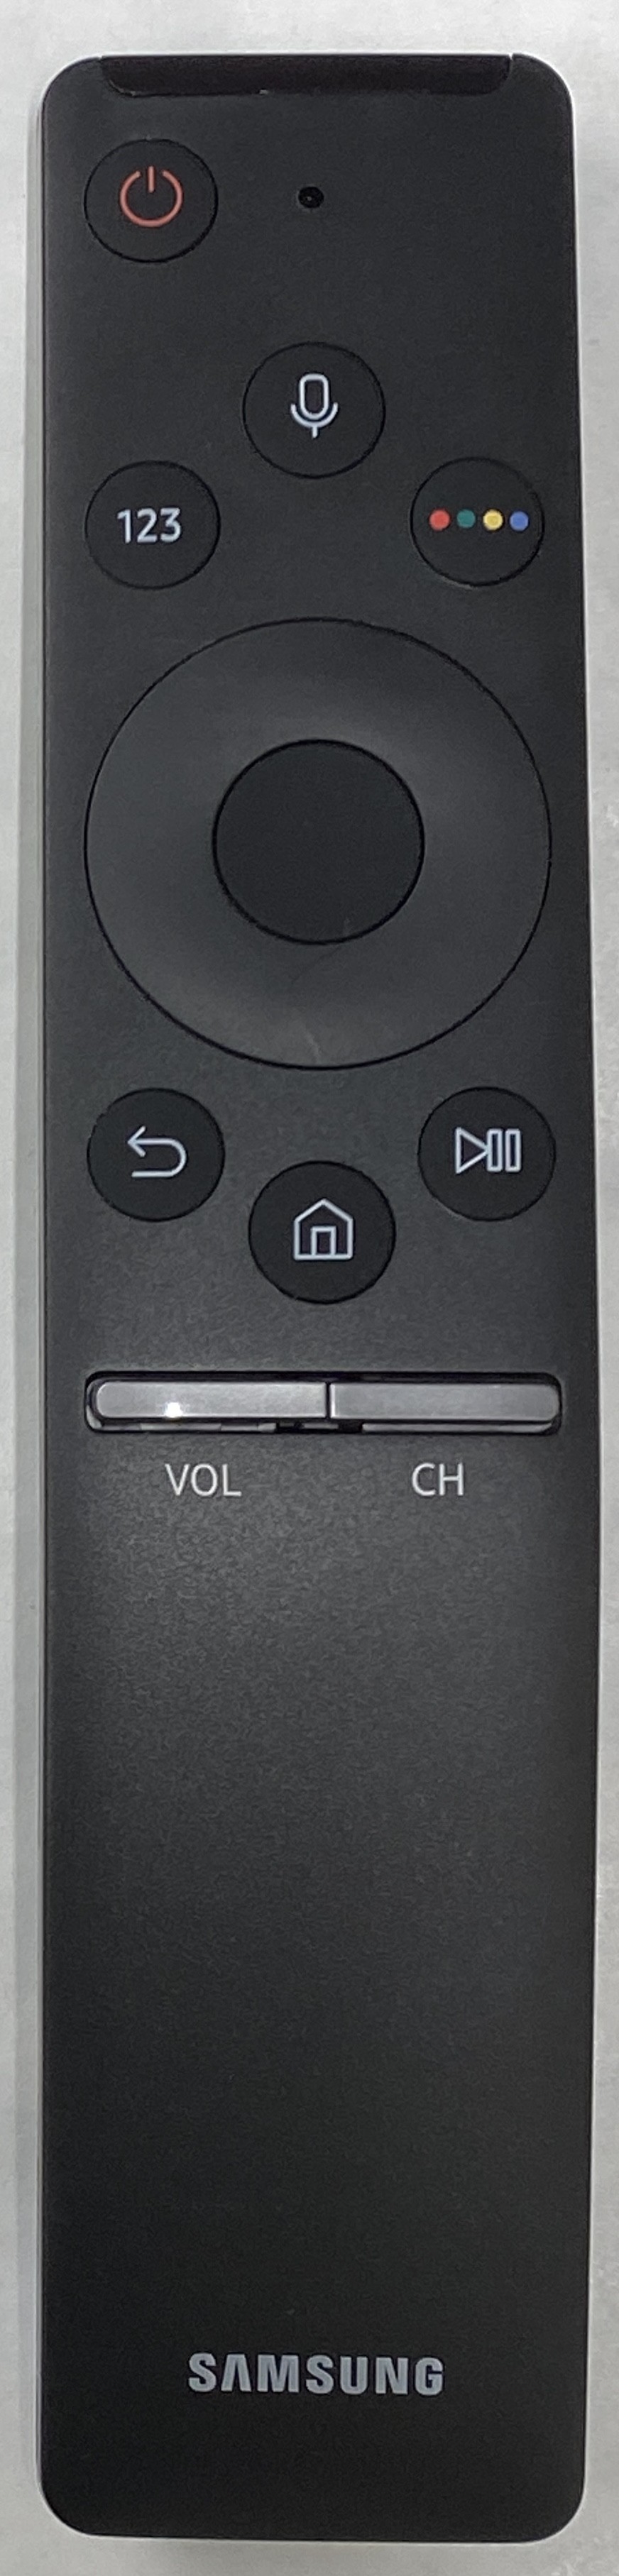 SAMSUNG TM1750A Smart Remote Control Original 